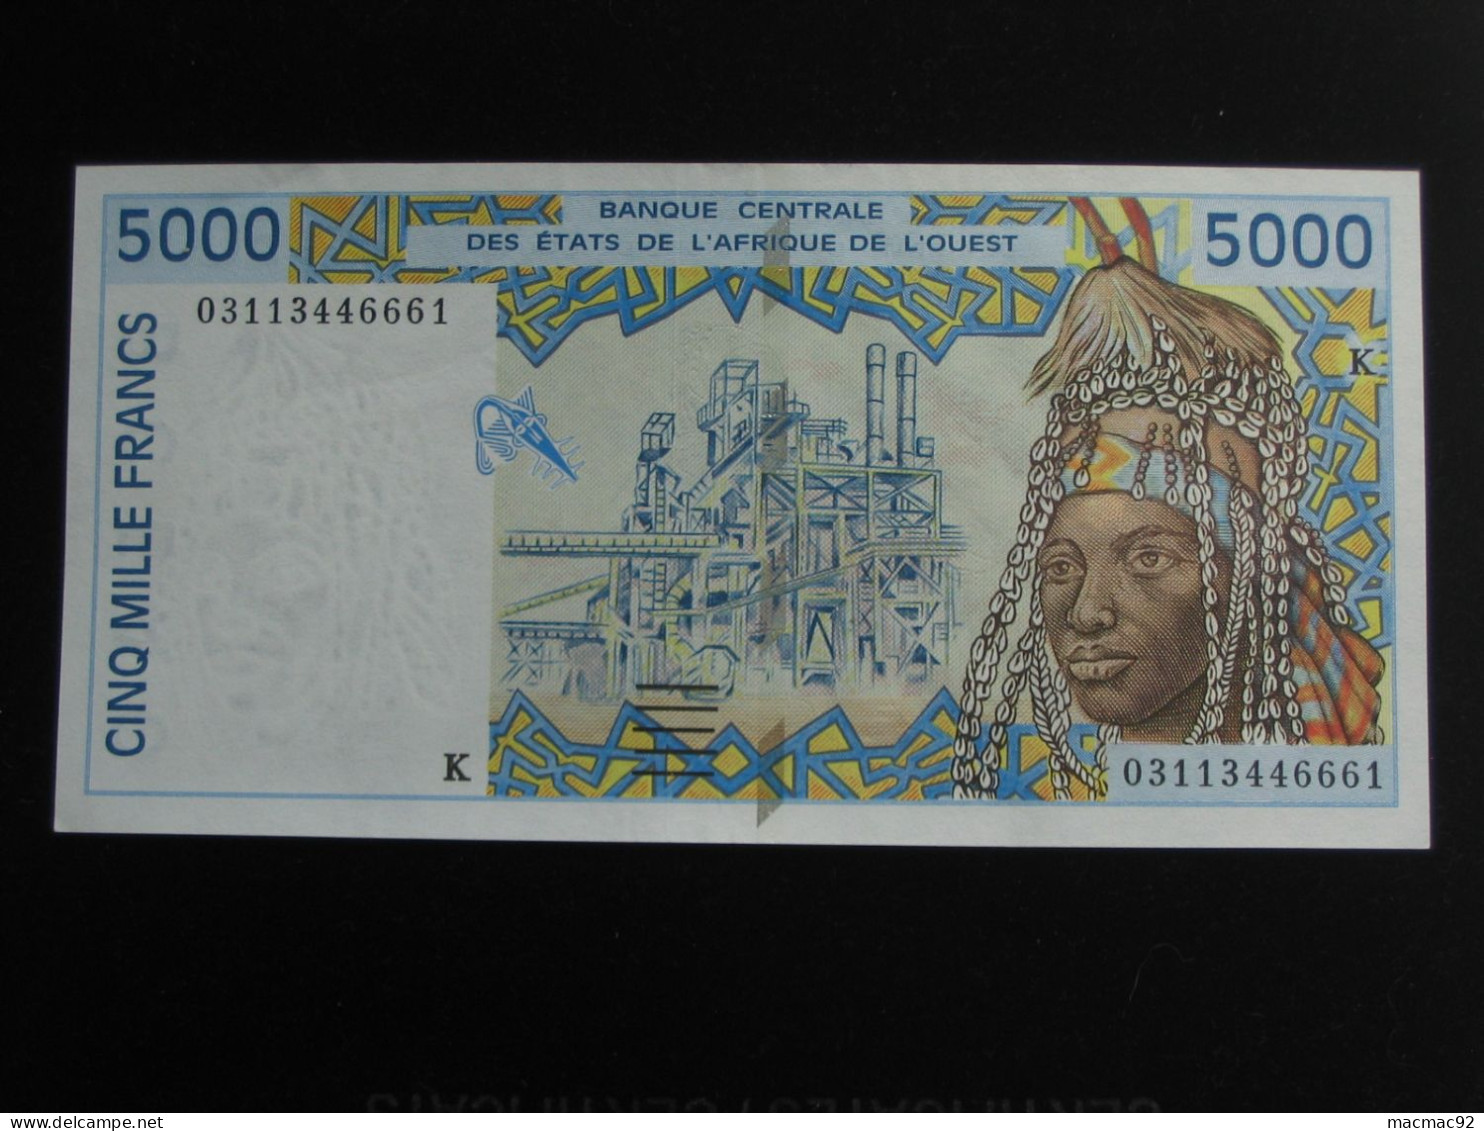 5000 Cinq Mille Francs 2002  - SENEGAL - Banque Centrale Des états De L'Afrique De L'ouest  **** EN ACHAT IMMEDIAT **** - Sénégal